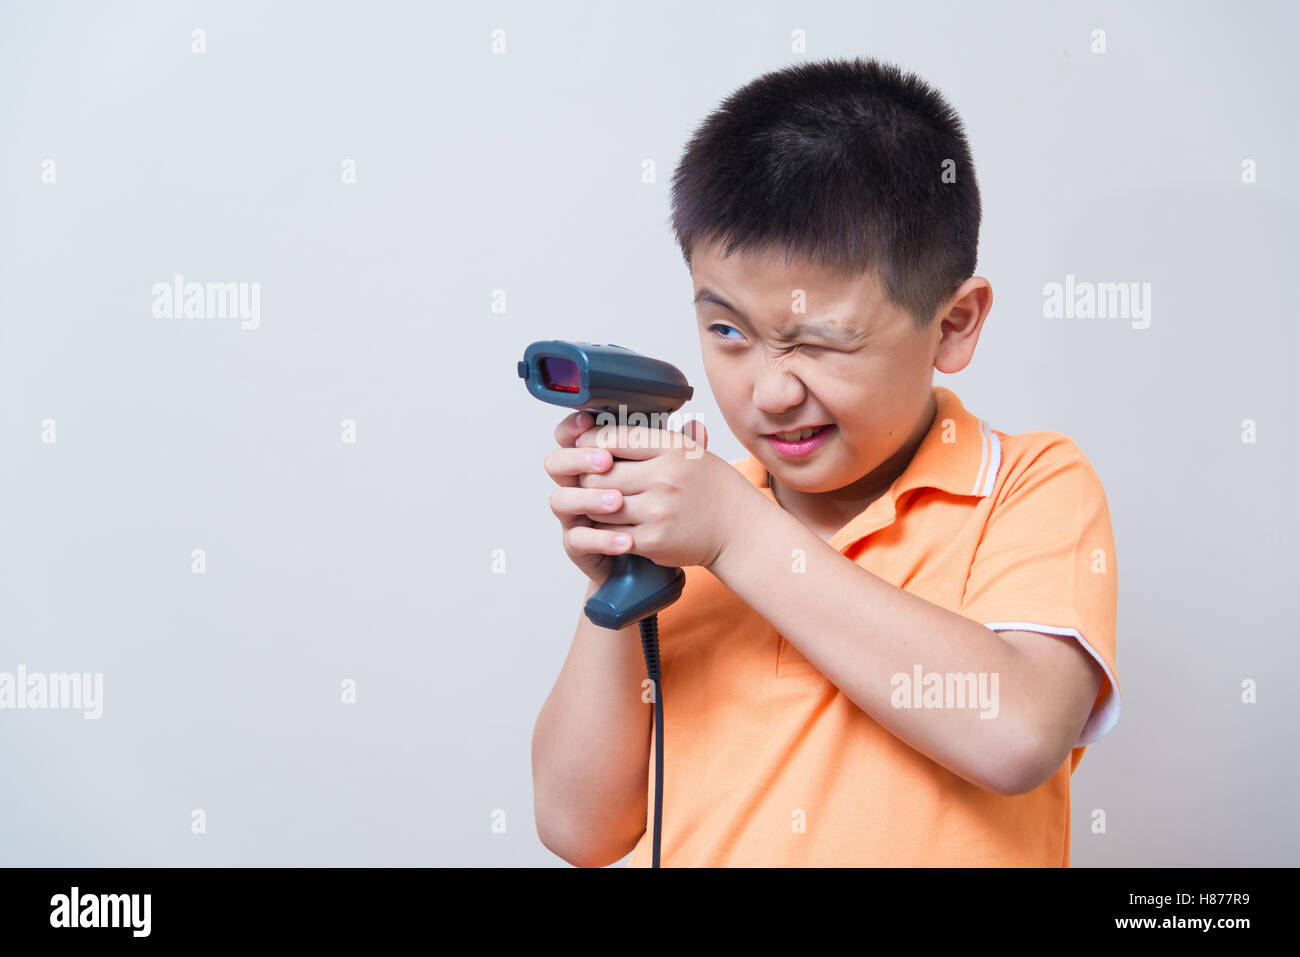 Asiatische junge Ziel ist eine gefälschte Pistole mit Barcode-Scanner,  Studio gedreht, auf graue Wand Hintergrund mit weichen Schatten gemacht  Stockfotografie - Alamy